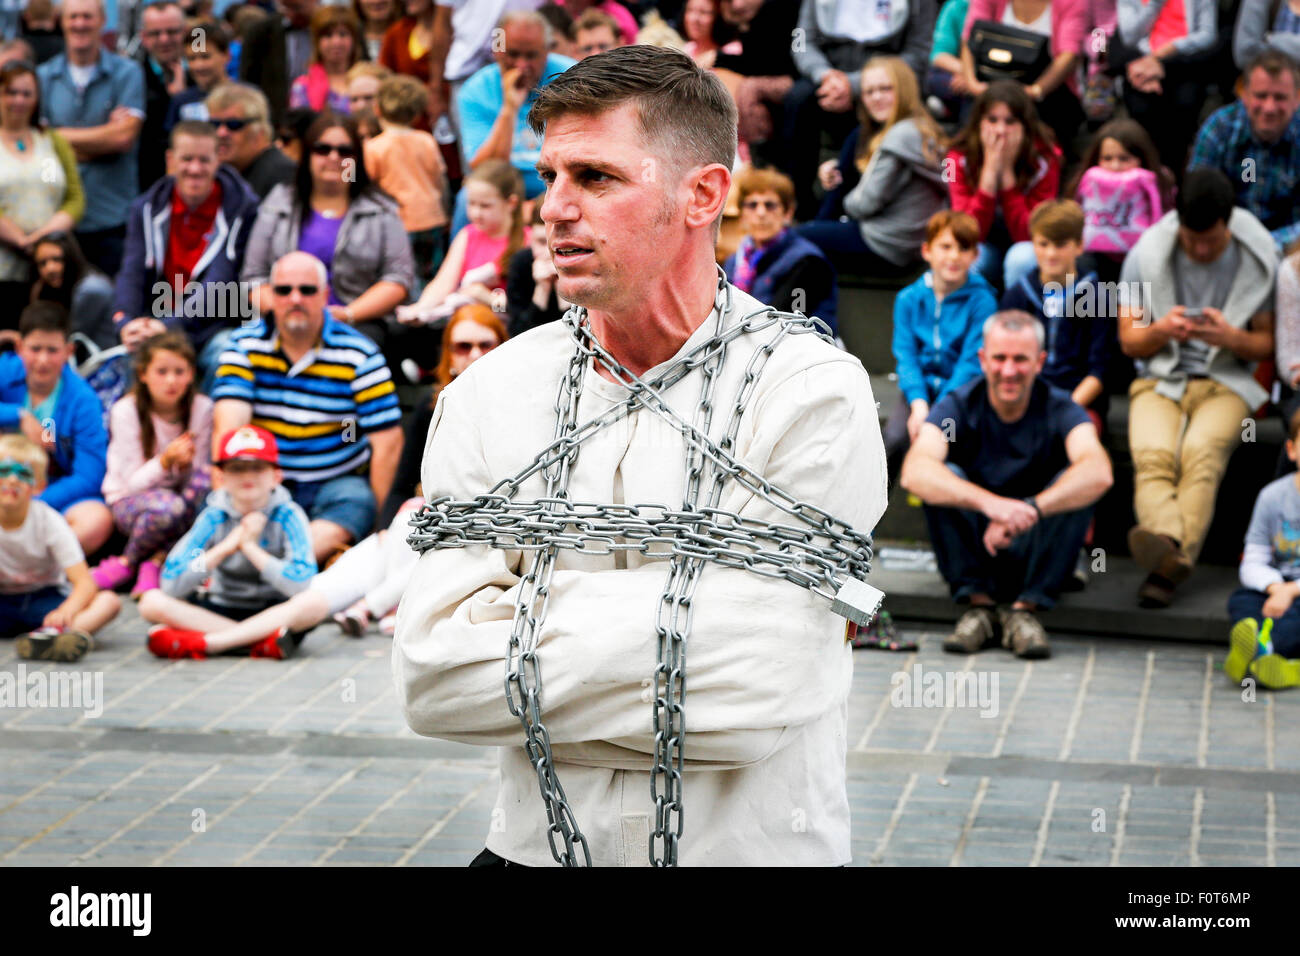 Artiste de rue l'accomplissement d'un acte comme un escapologist, la butte, Fringe Festival d'Édimbourg, Écosse, Royaume-Uni Banque D'Images